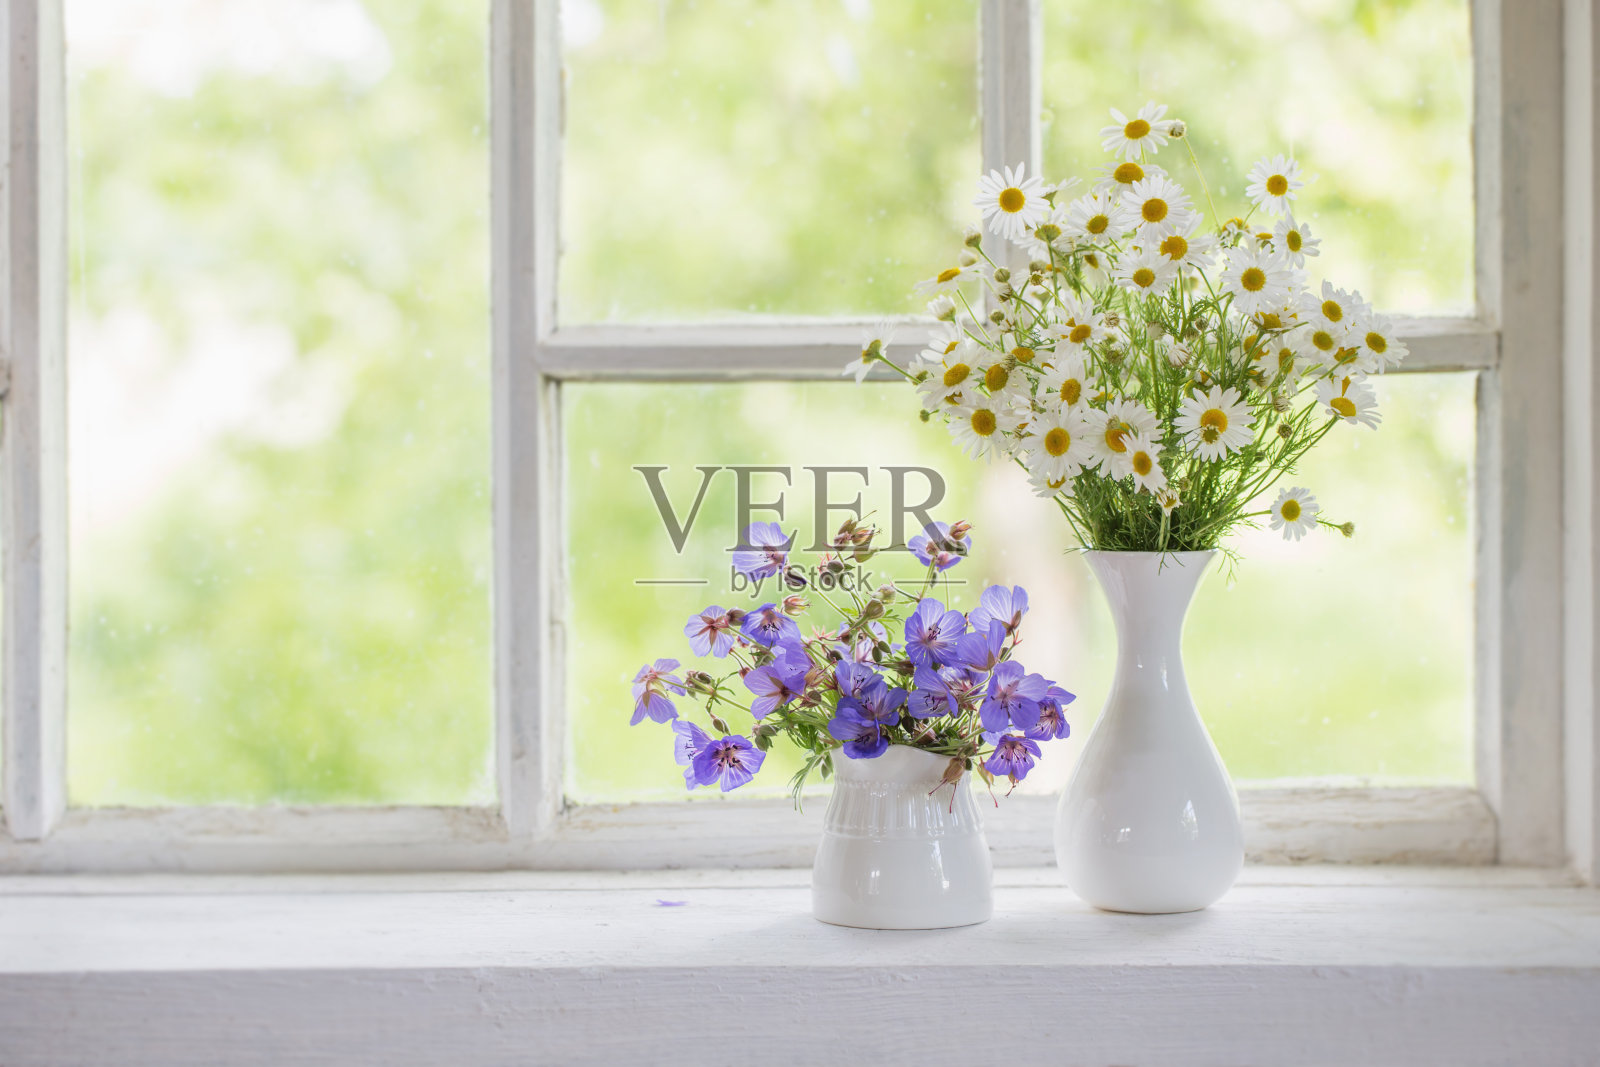 窗台上花瓶里的花照片摄影图片